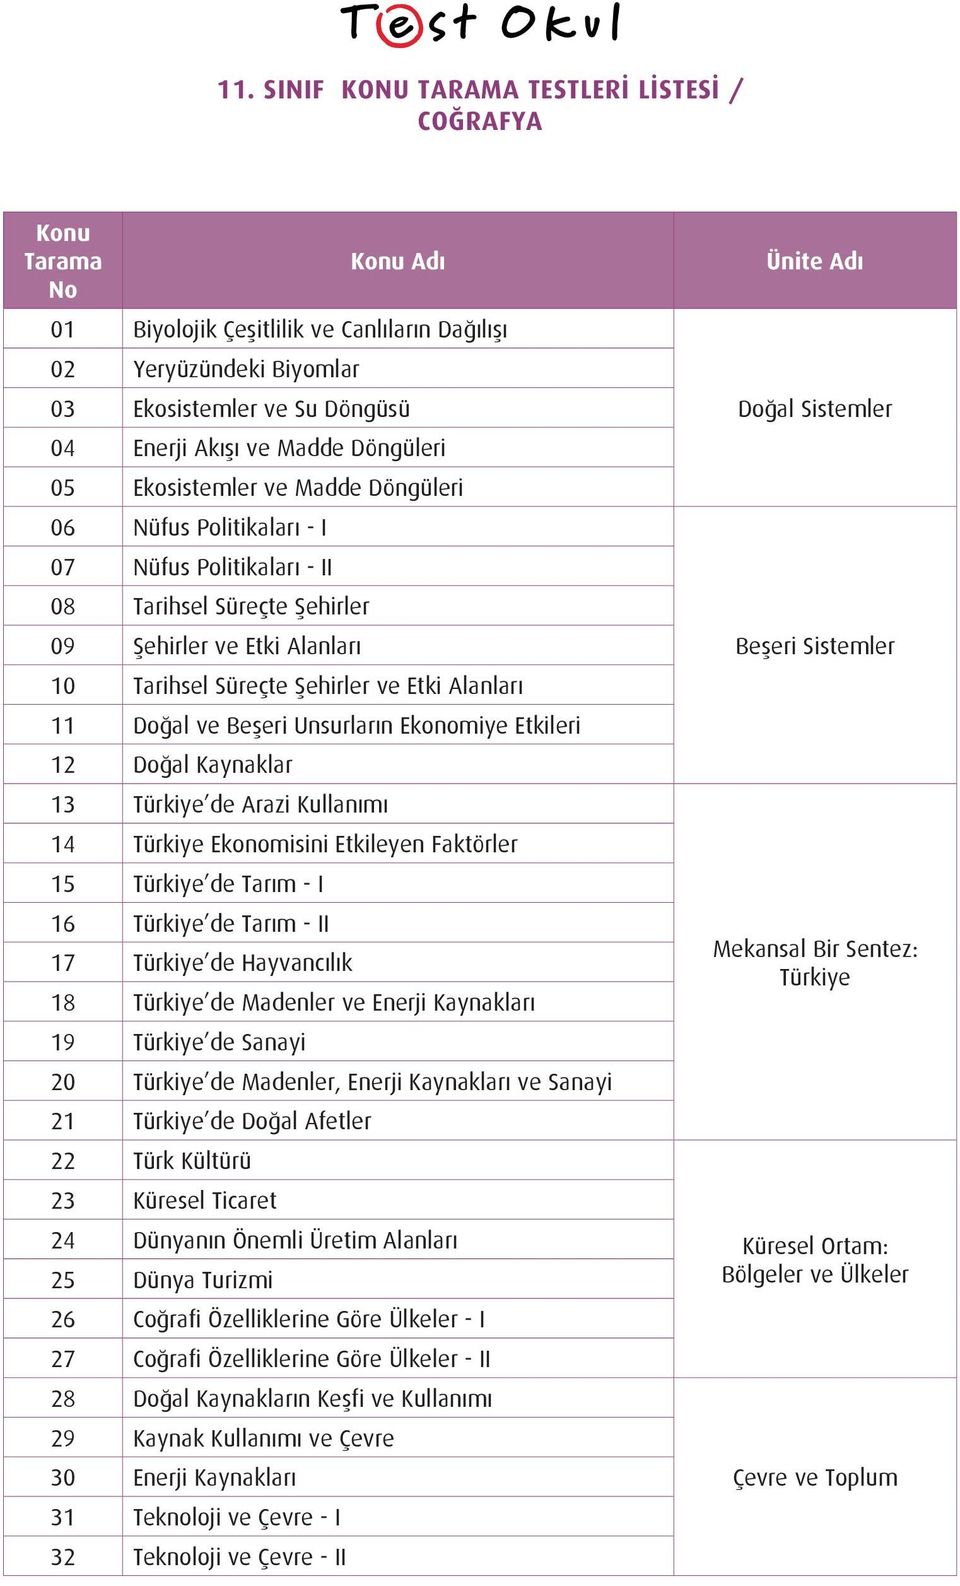 Doğal Kaynaklar 13 Türkiye de Arazi Kullanımı 14 Türkiye Ekonomisini Etkileyen Faktörler 15 Türkiye de Tarım - I 16 Türkiye de Tarım - II 17 Türkiye de Hayvancılık 18 Türkiye de Madenler ve Enerji